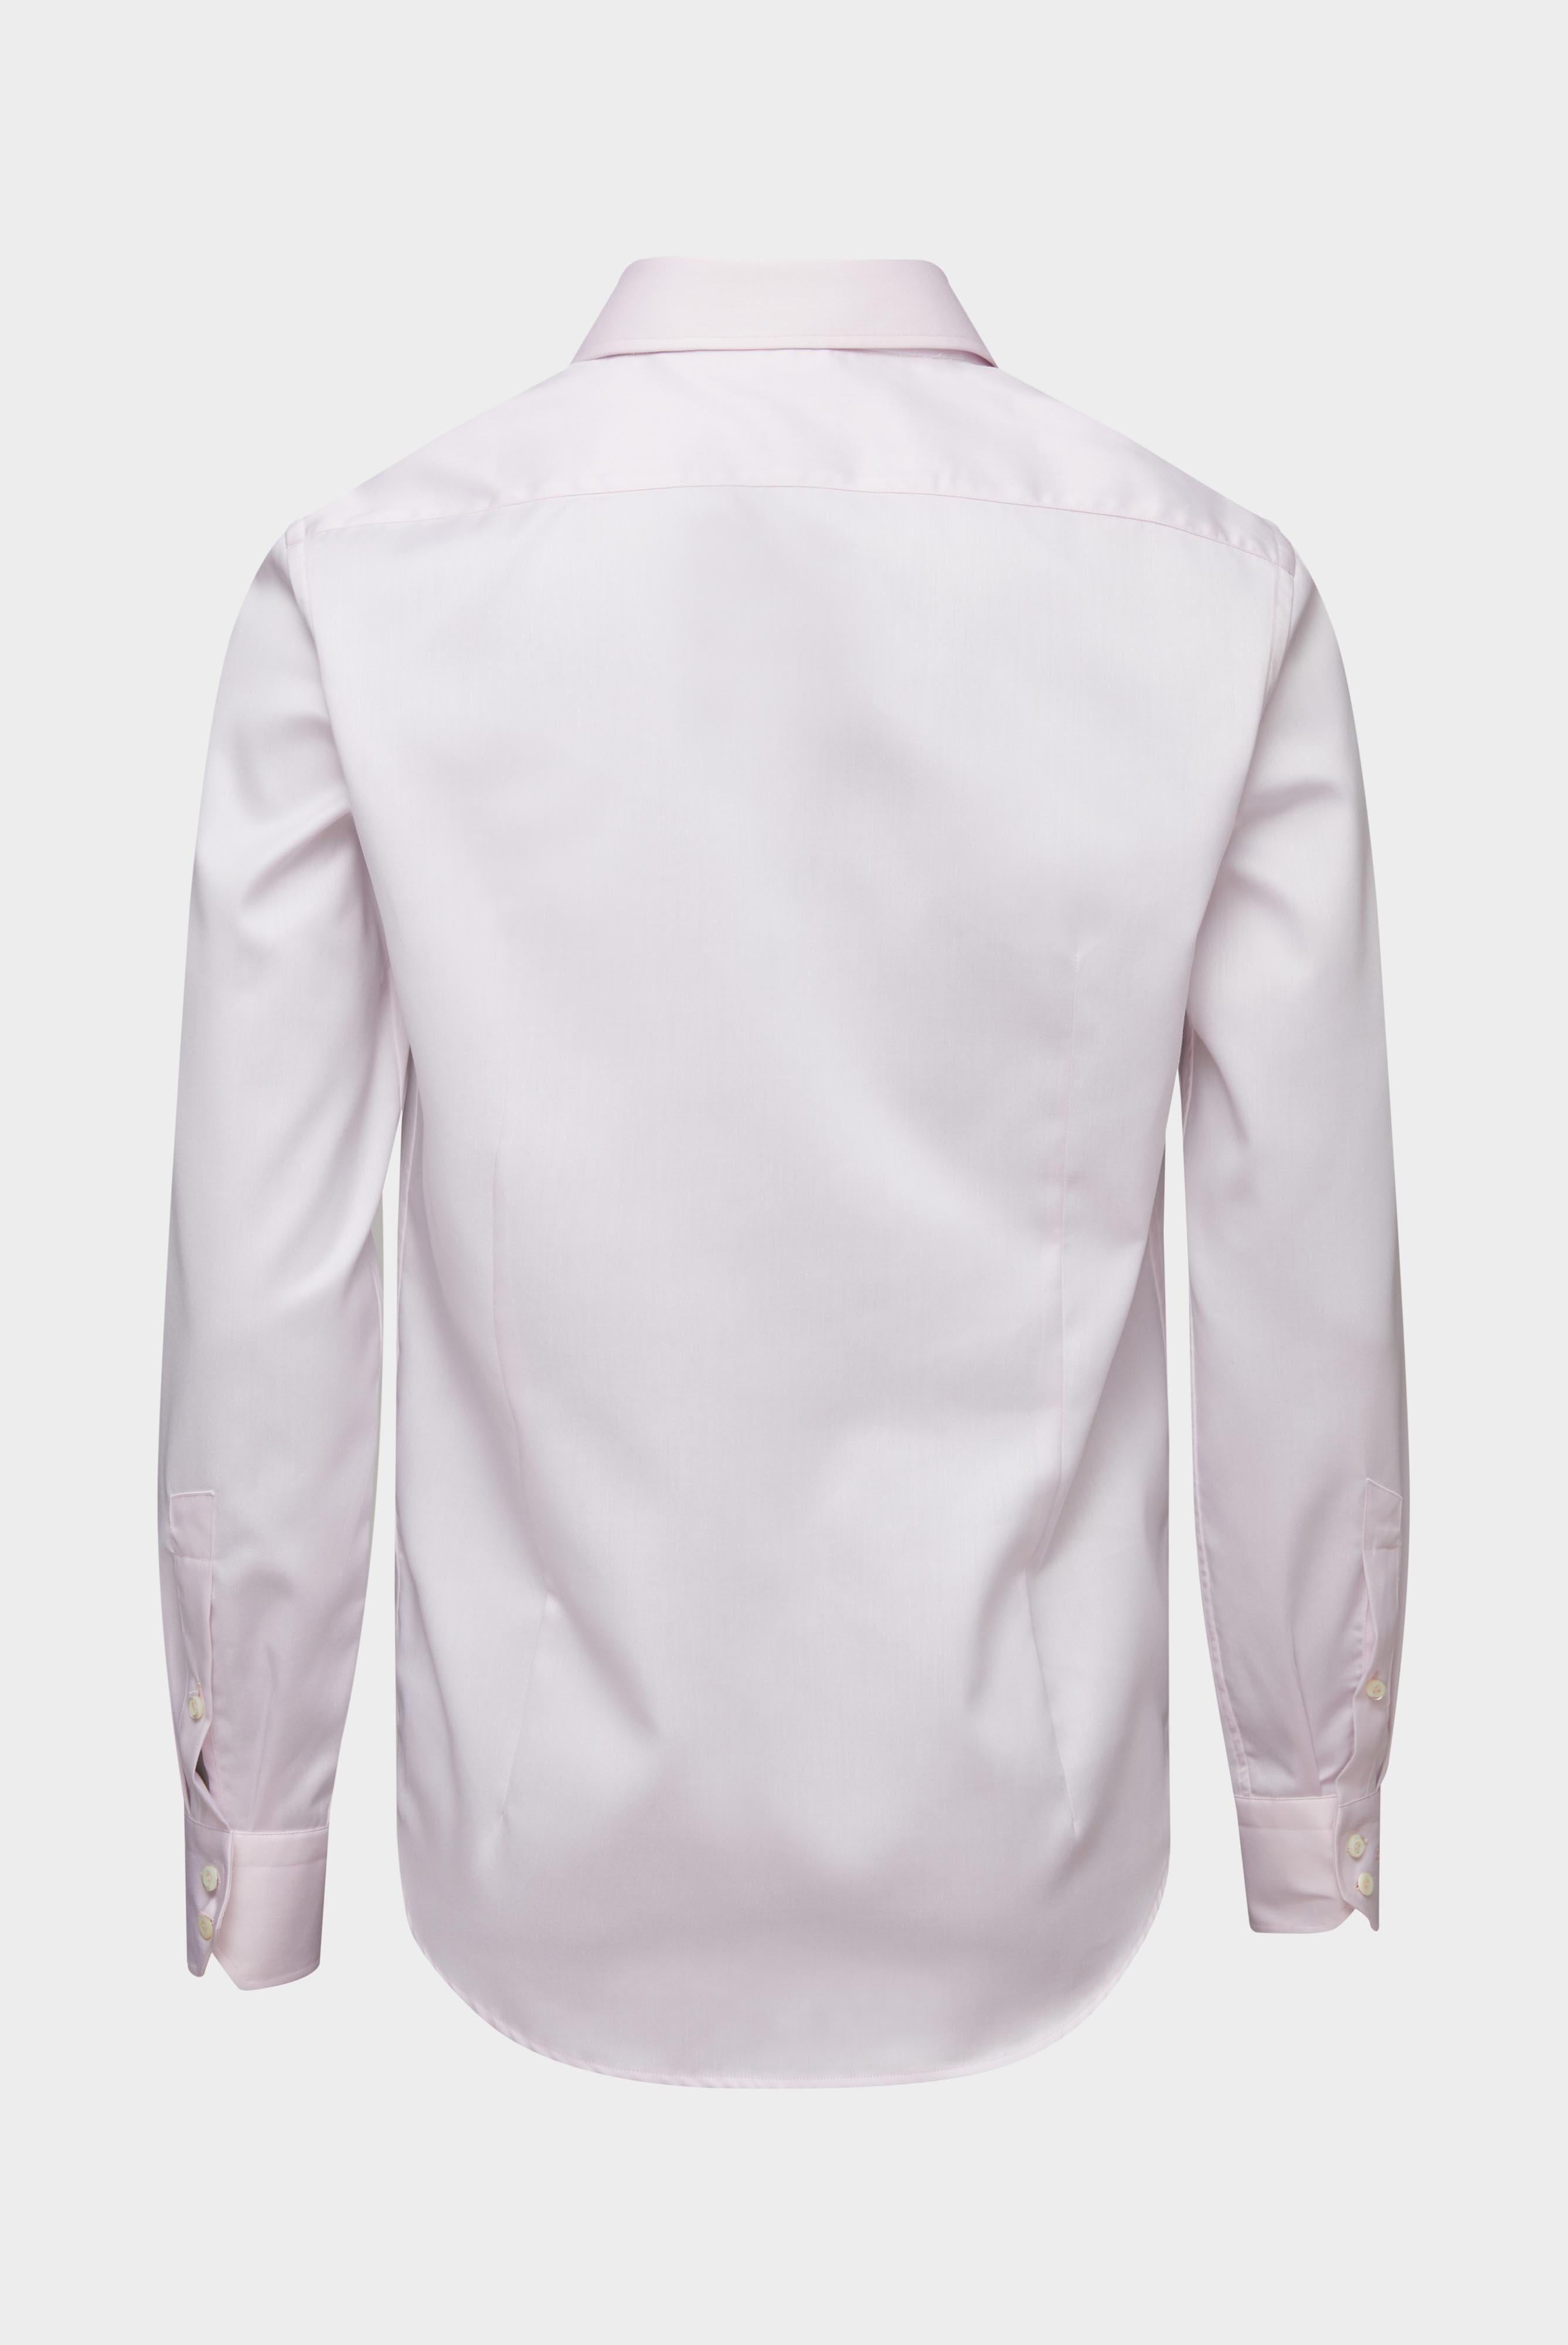 Bügelleichte Hemden+Bügelfreies Twill Hemd Slim Fit+20.2019.BQ.132241.510.38